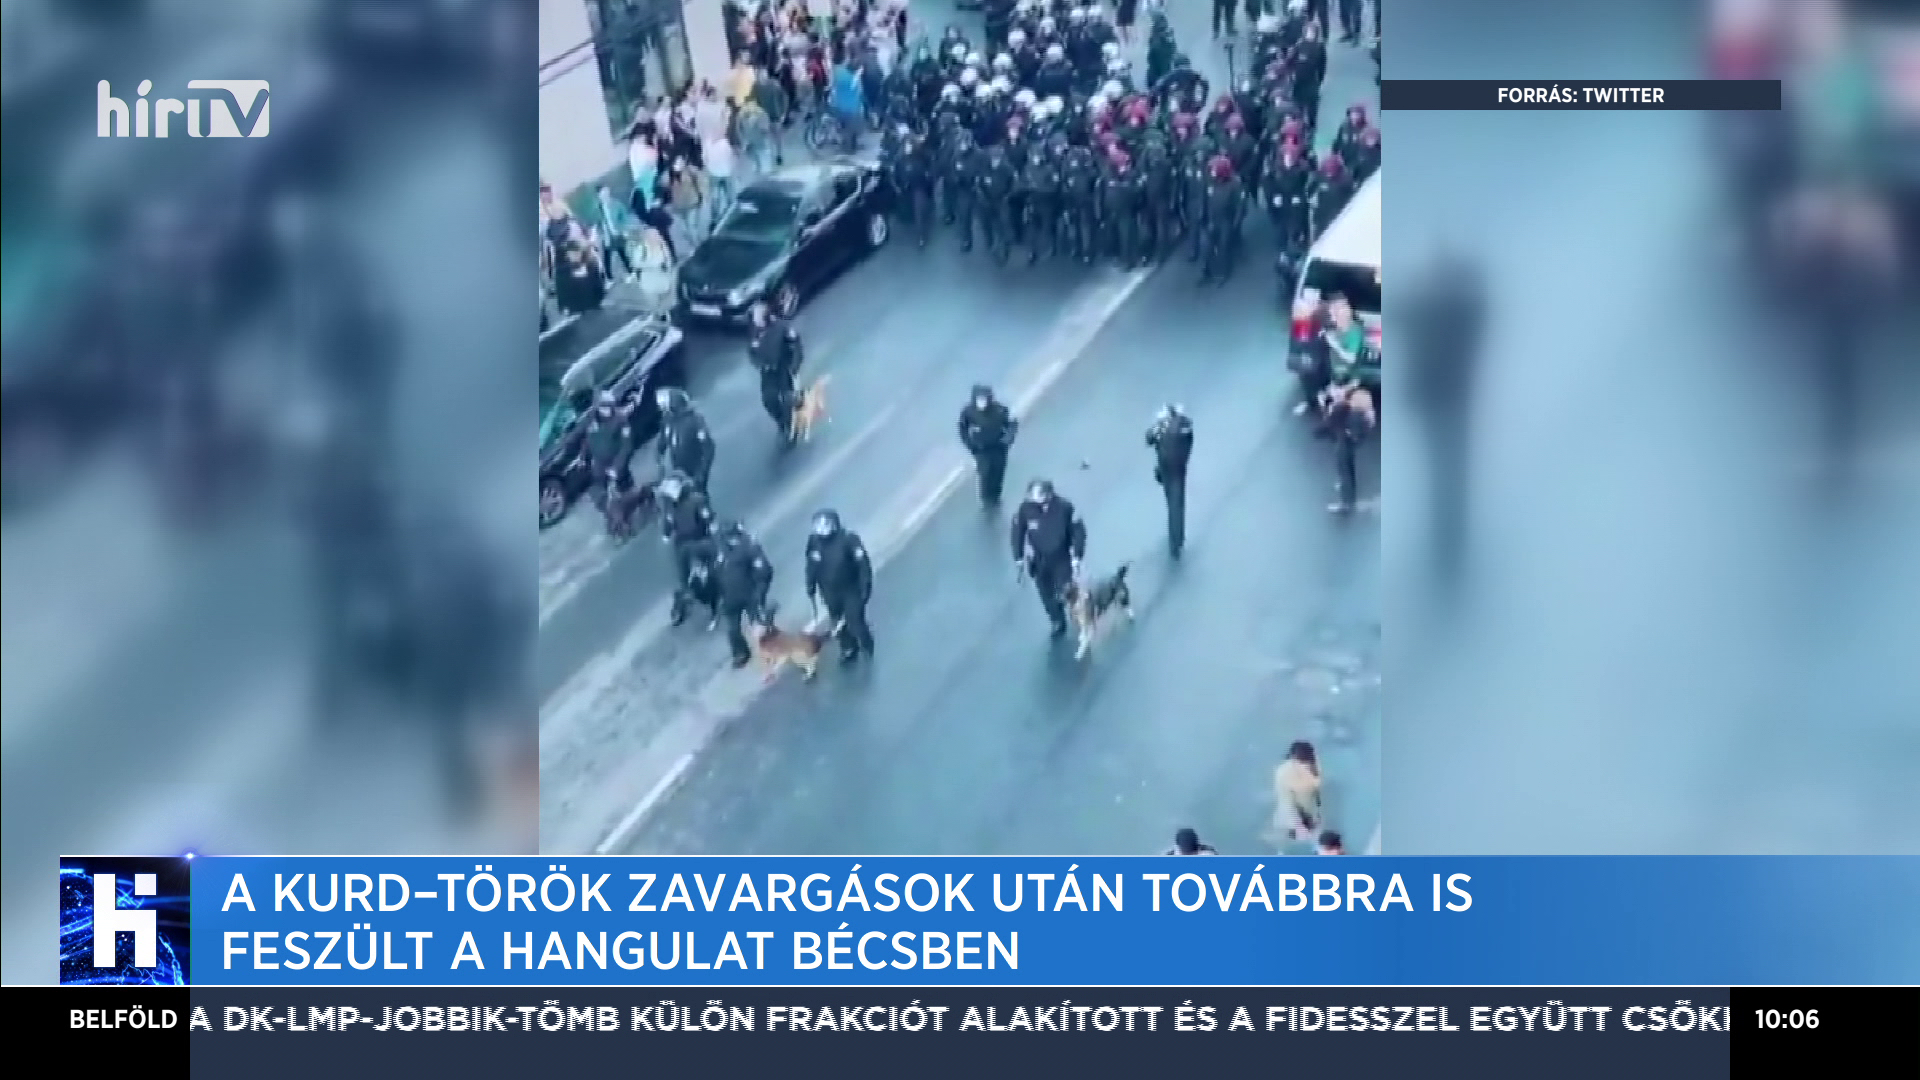 A kurd-török zavargások után továbbra is feszült a hangulat Bécsben